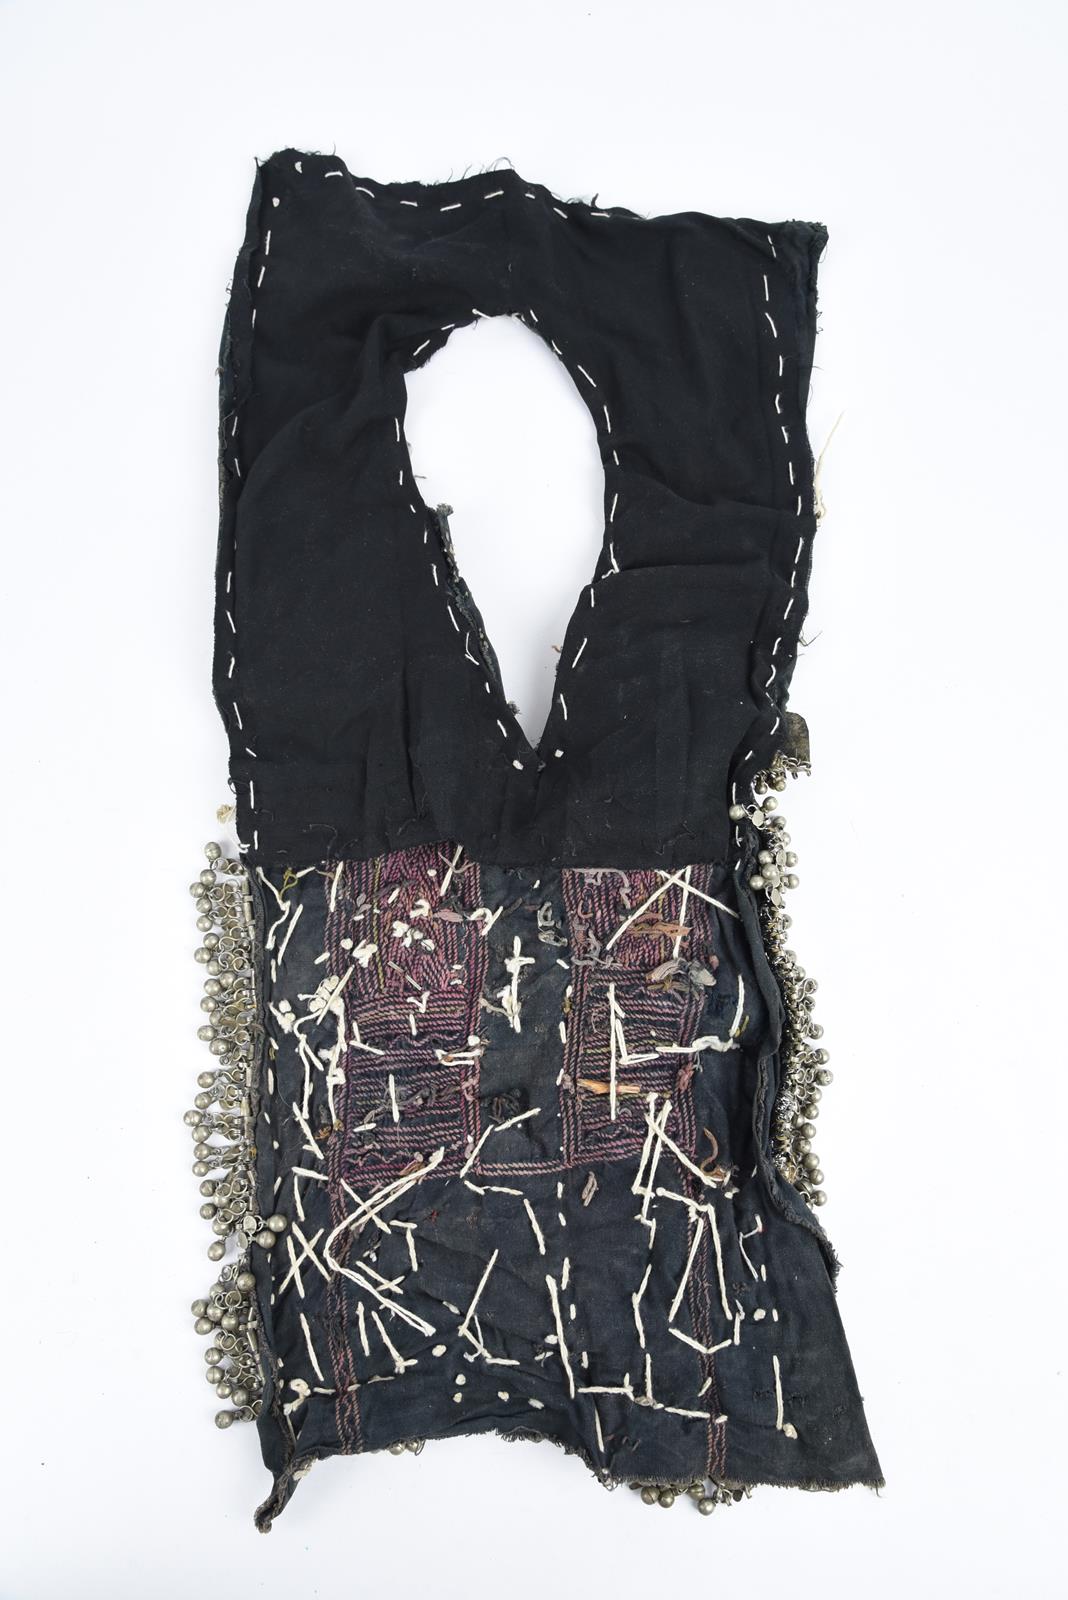 λA Bedouin amulet chest ornament cloth with numerous sewn on amulets and beads, 62cm long, and three - Bild 26 aus 27